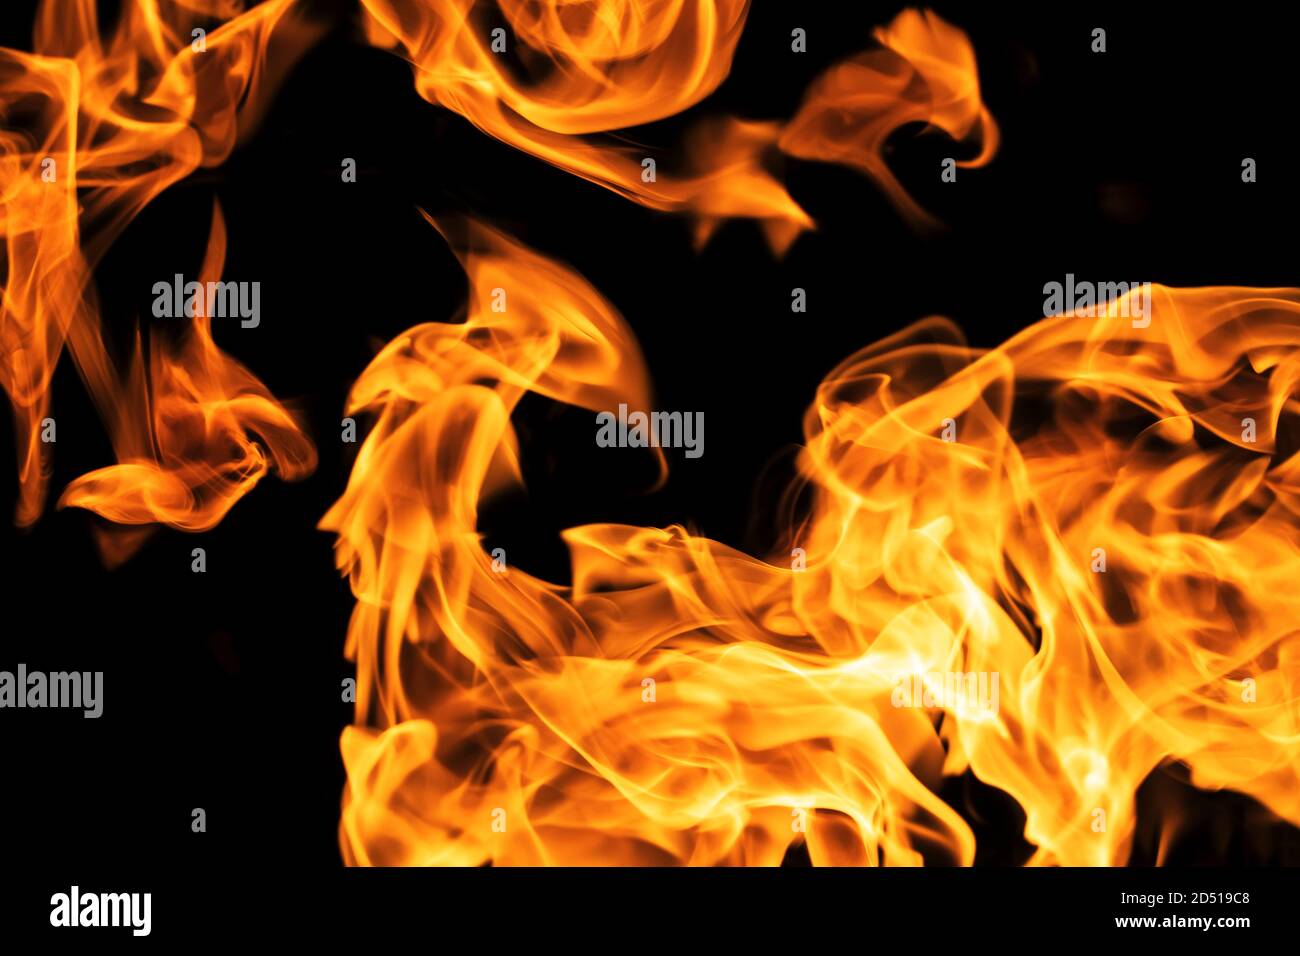 Llamas de fuego sobre fondo negro aislado. La quema de gas o gasolina quema con fuego y llamas. Chispas quemadas de cerca, patrones de fuego. Infernal Foto de stock